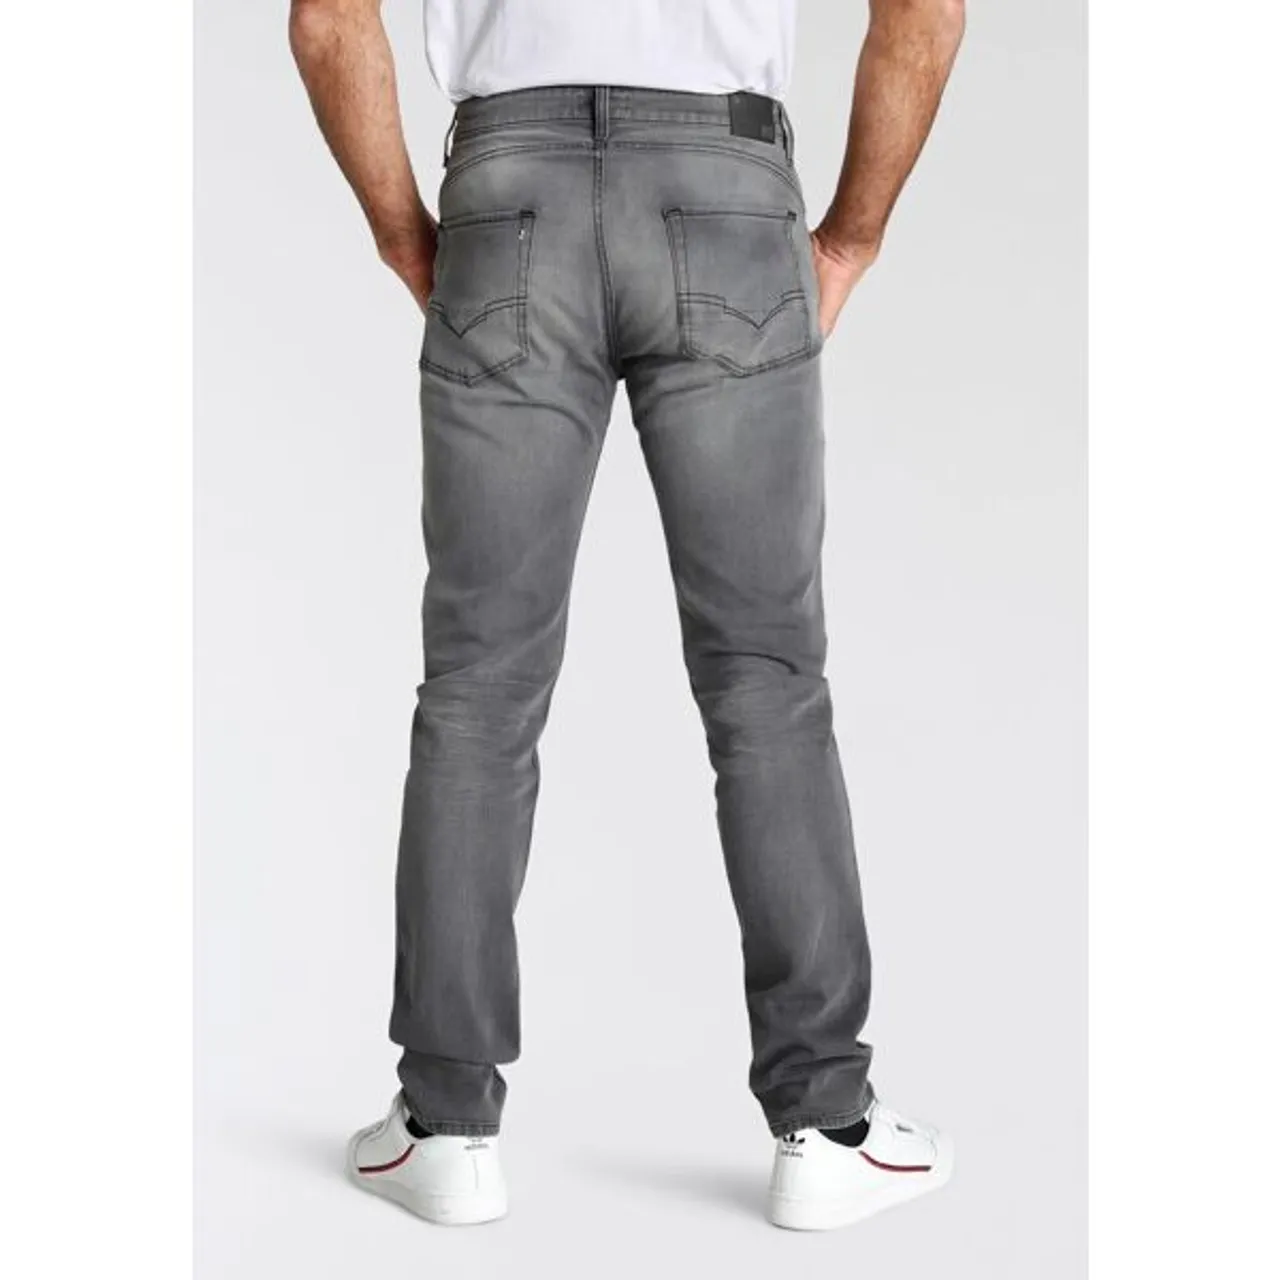 Tapered-fit-Jeans H.I.S "CIAN" Gr. 32, Länge 32, grau (dark grey) Herren Jeans Tapered-Jeans Ökologische, wassersparende Produktion durch Ozon Wash